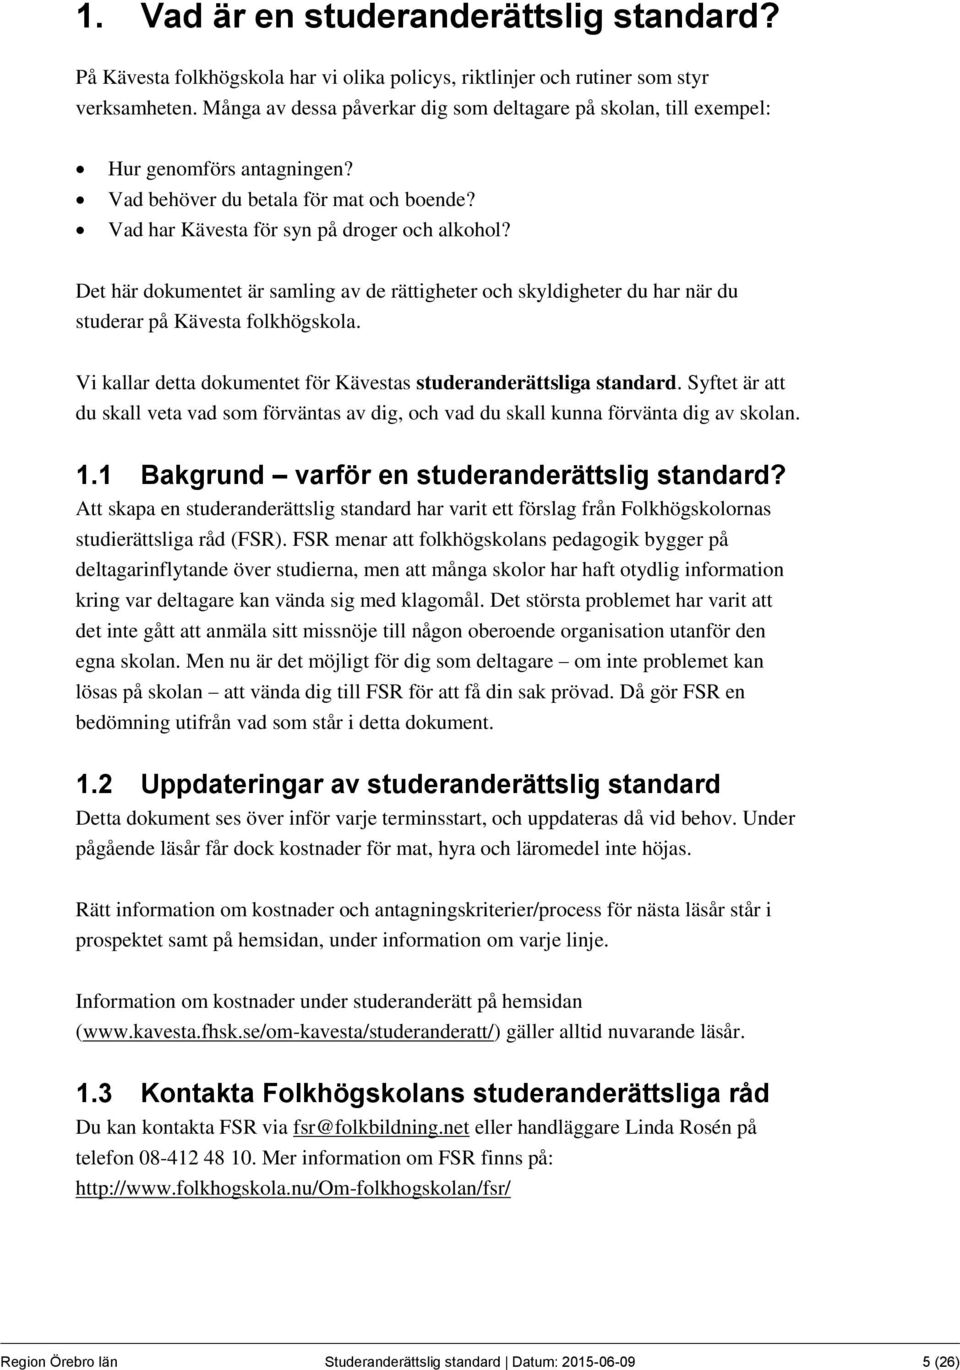 Det här dokumentet är samling av de rättigheter och skyldigheter du har när du studerar på Kävesta folkhögskola. Vi kallar detta dokumentet för Kävestas studeranderättsliga standard.